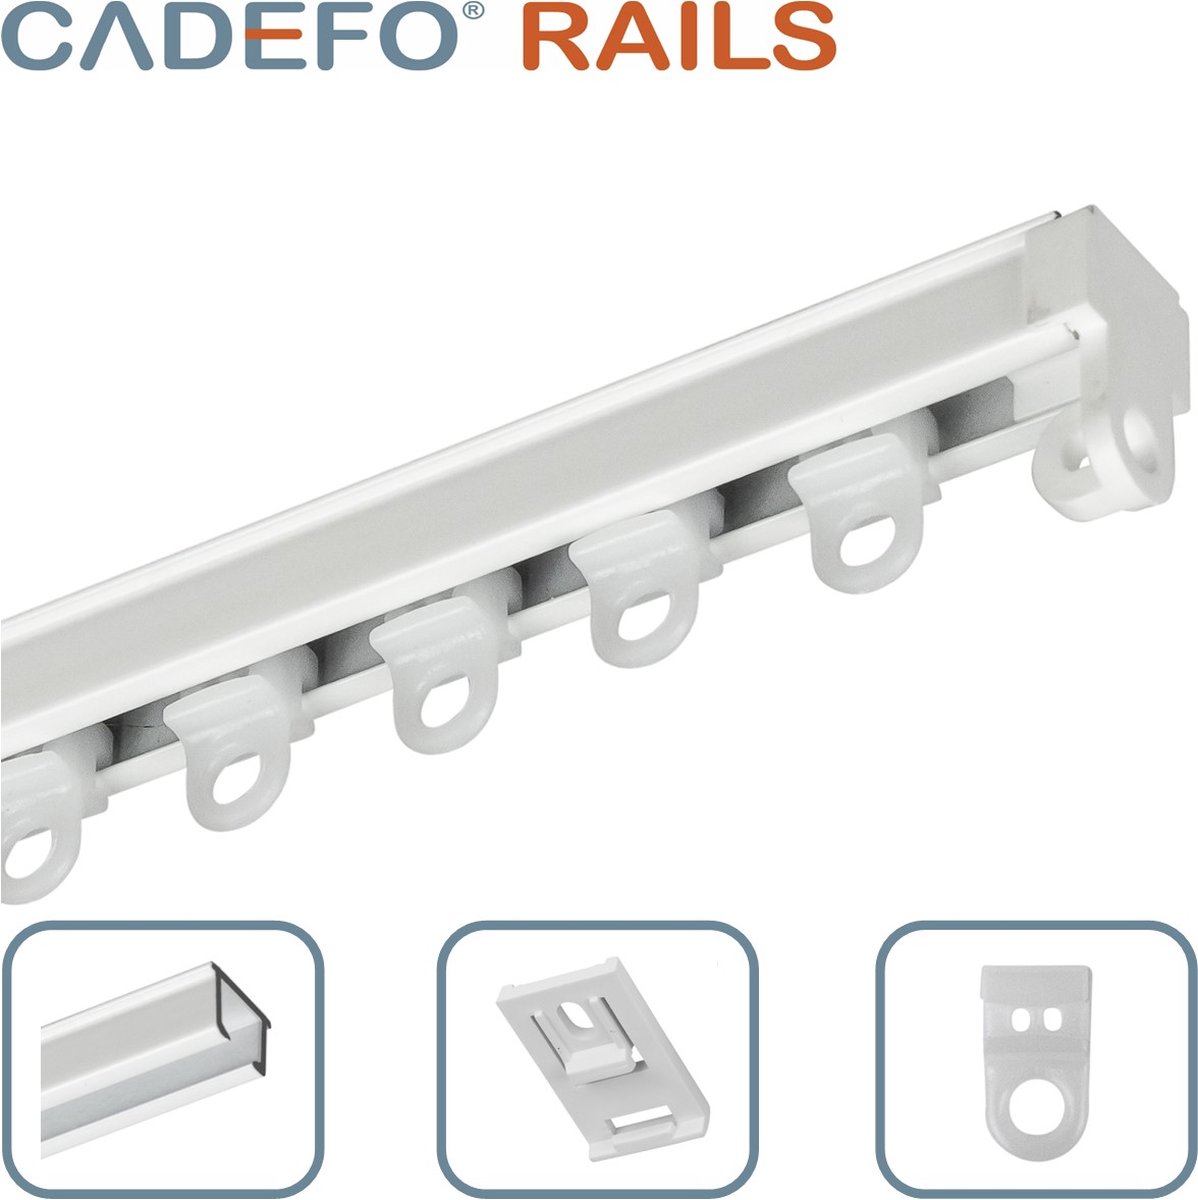 CADEFO RAILS (351 - 400 cm) Gordijnrails - Compleet op maat! - UIT 1 STUK - Leverbaar tot 6 meter - Plafondbevestiging - Lengte 397 cm